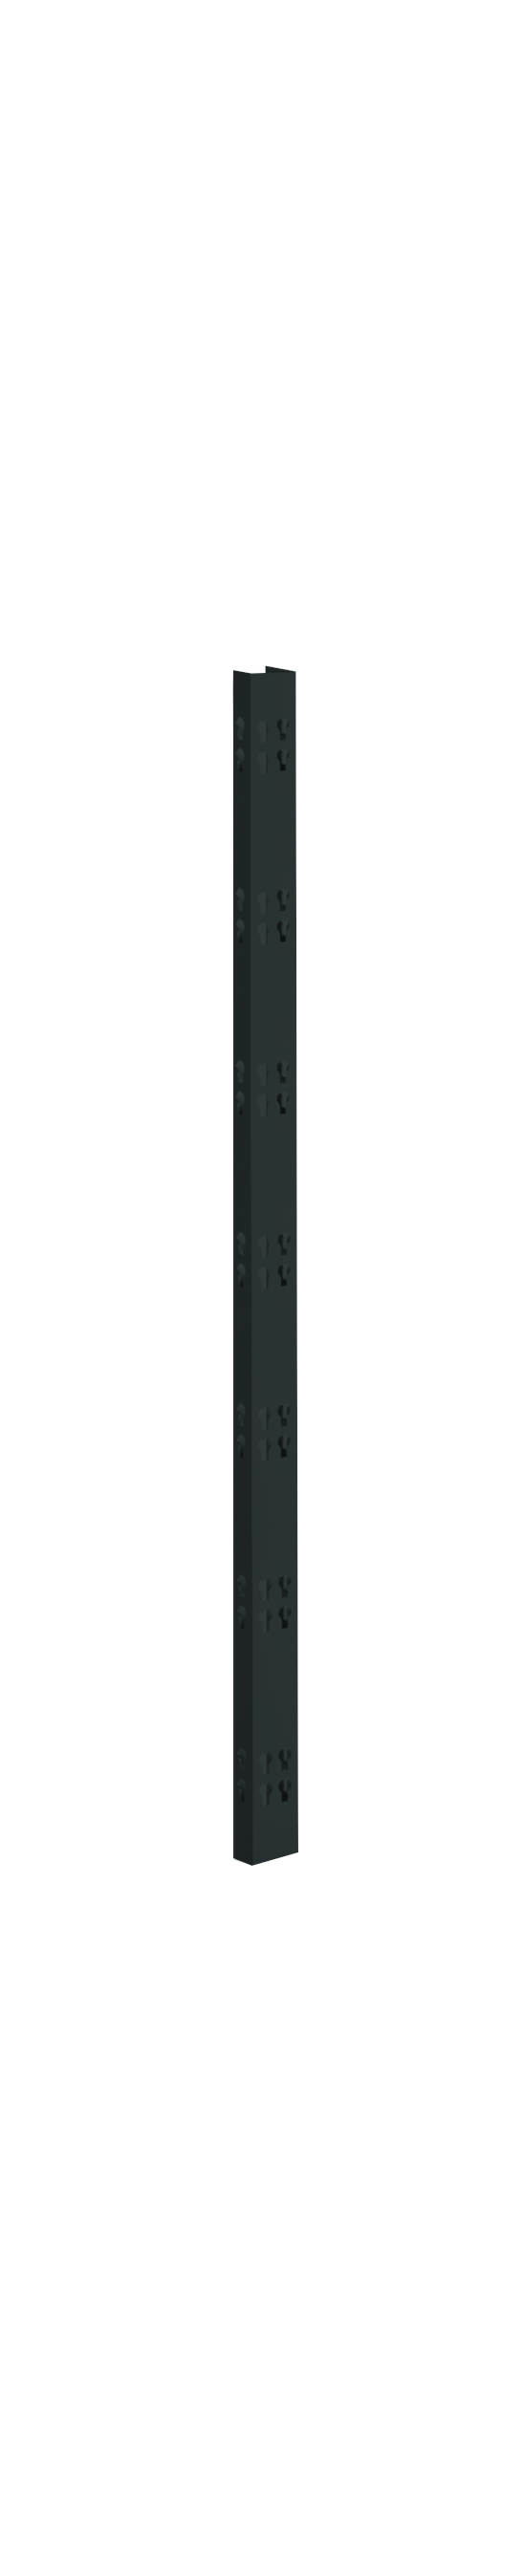 2 Profi-Stecksystem C-Holme, 195x4,2x2,8 cm (HxBxT), schwarz